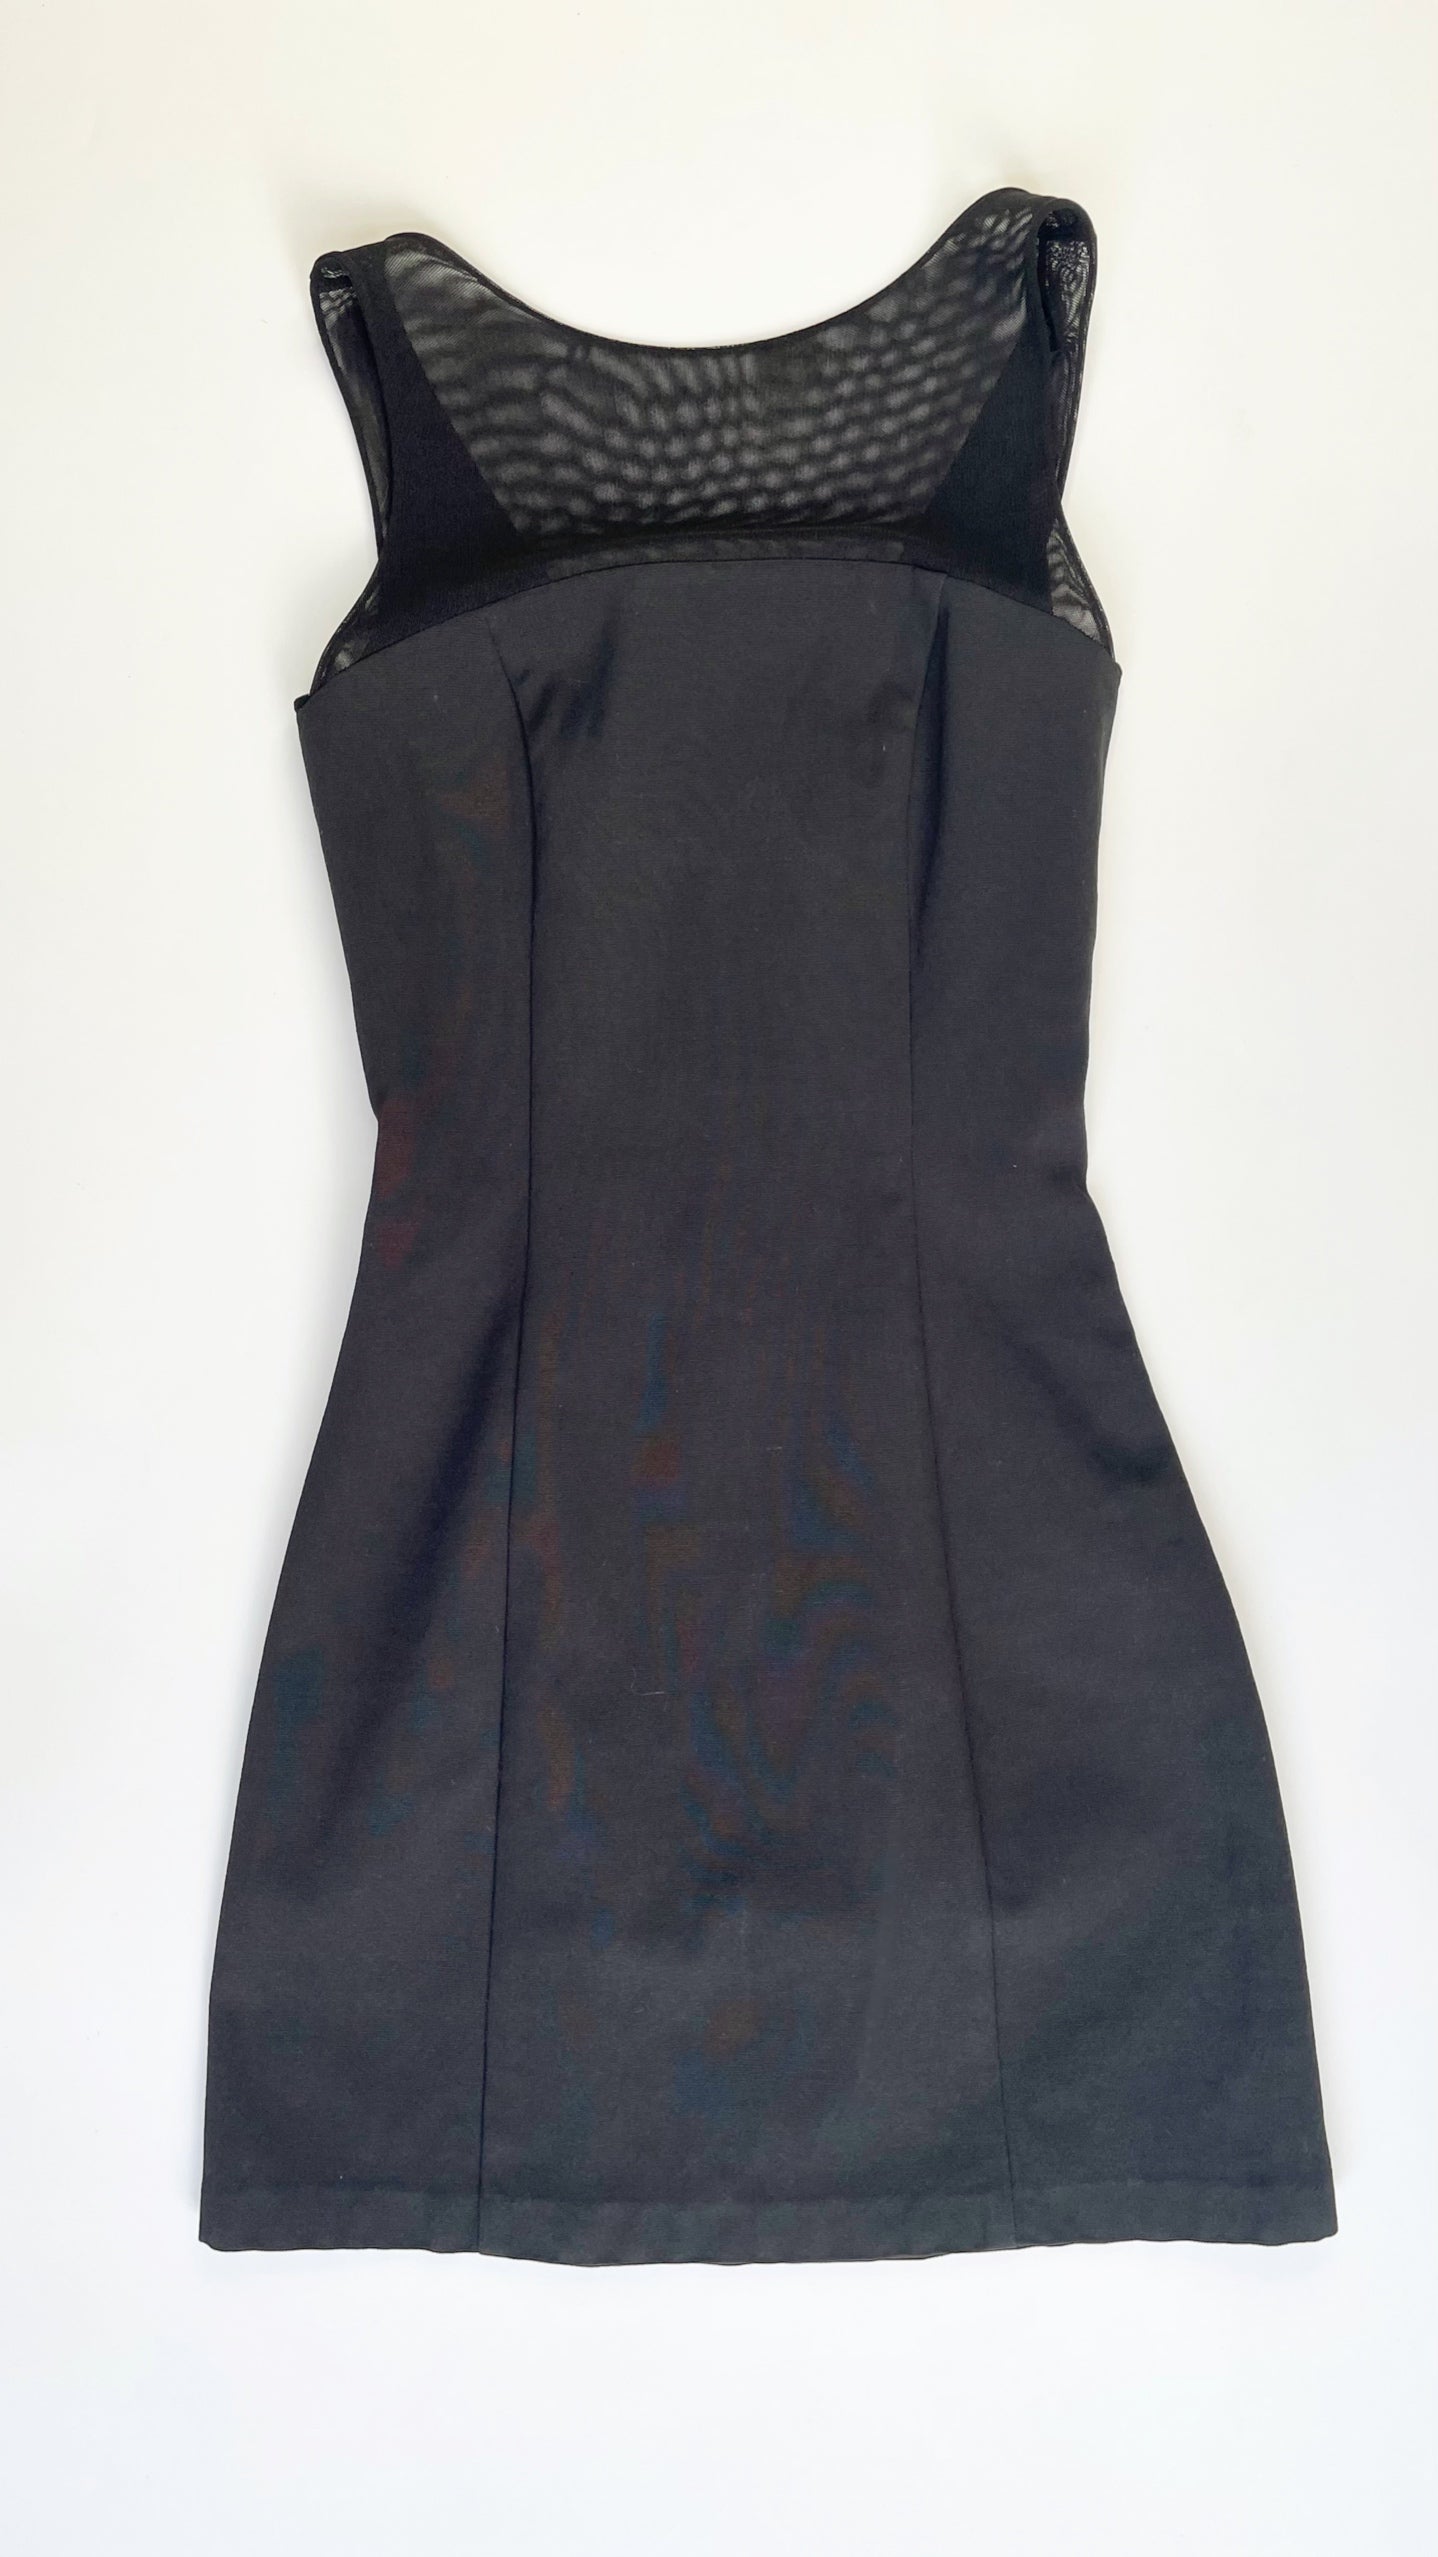 90s Black Cache mesh panel mini tank dress - Size S